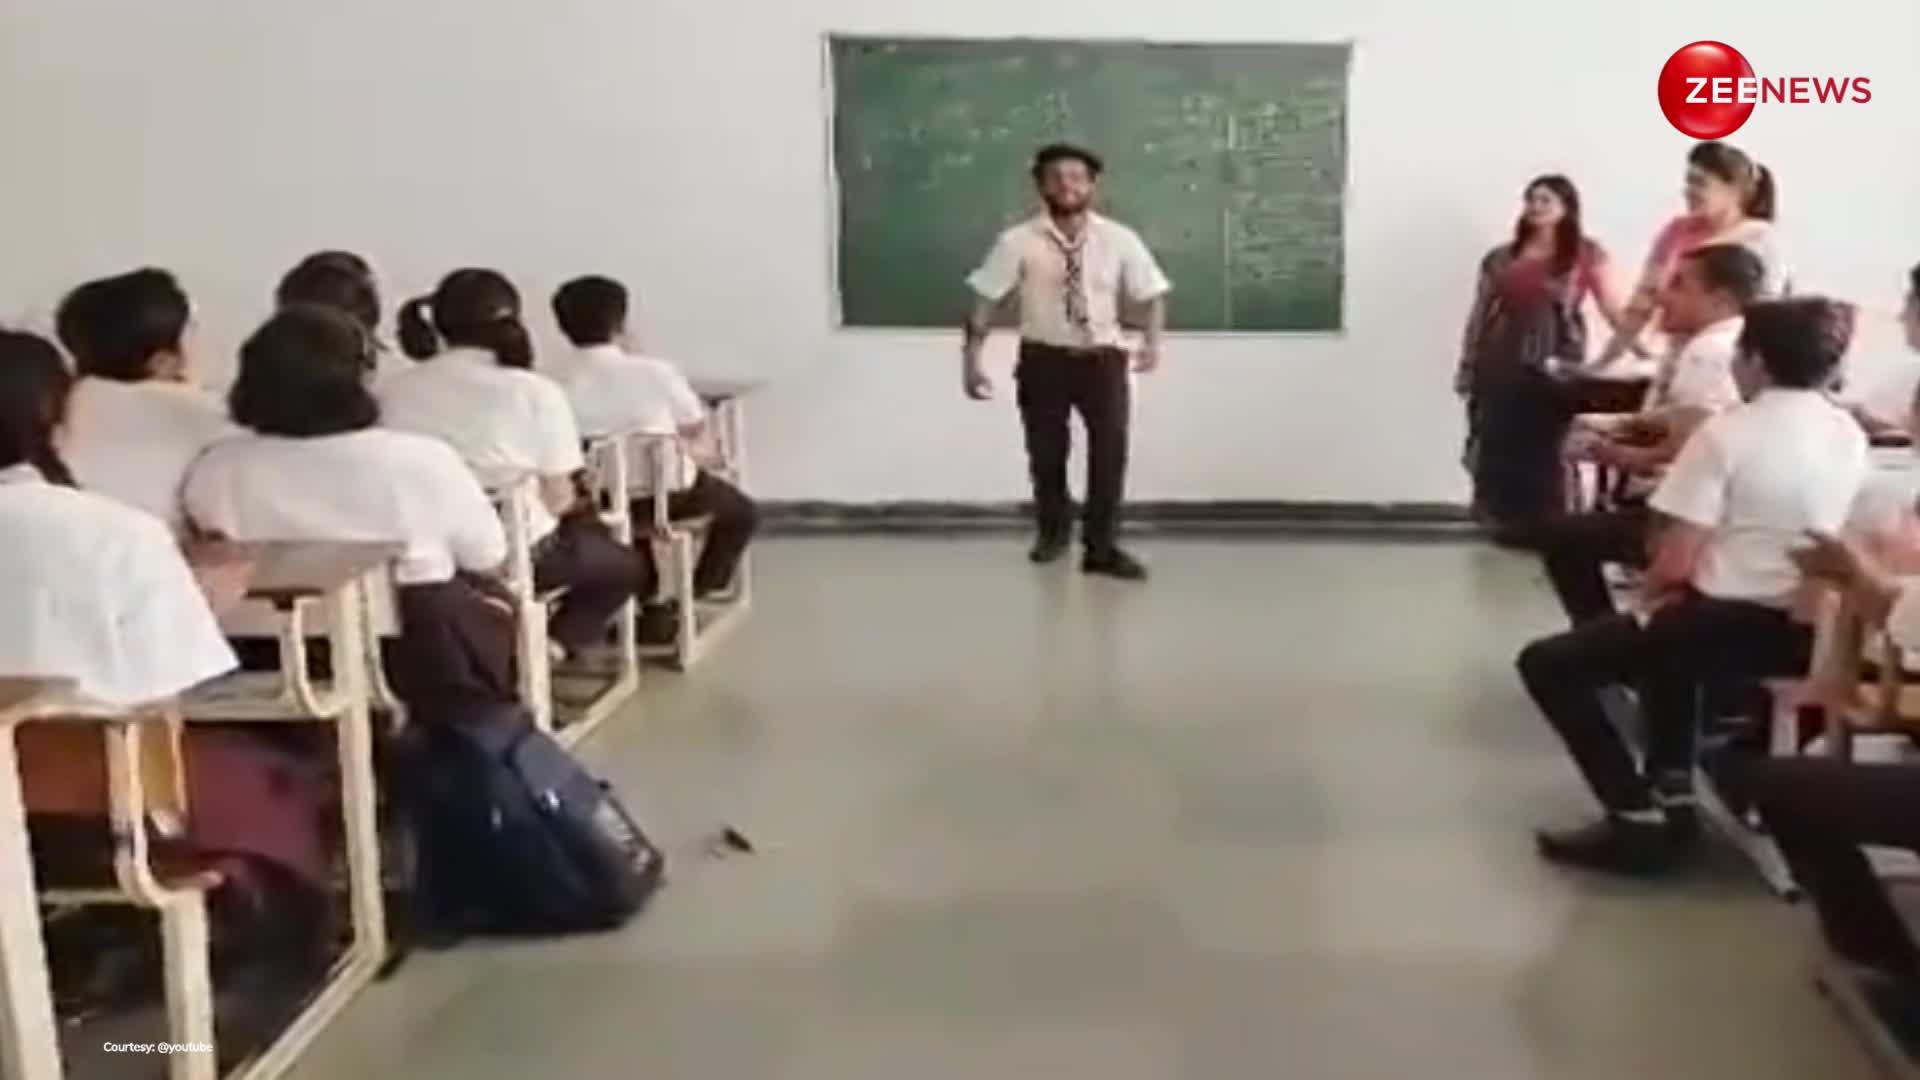 10 क्लास के लड़के ने स्कूल के सामने किया हरियाणवी गाने पर ऐसा डांस, देख टीचर्स के भी उड़ गए होश